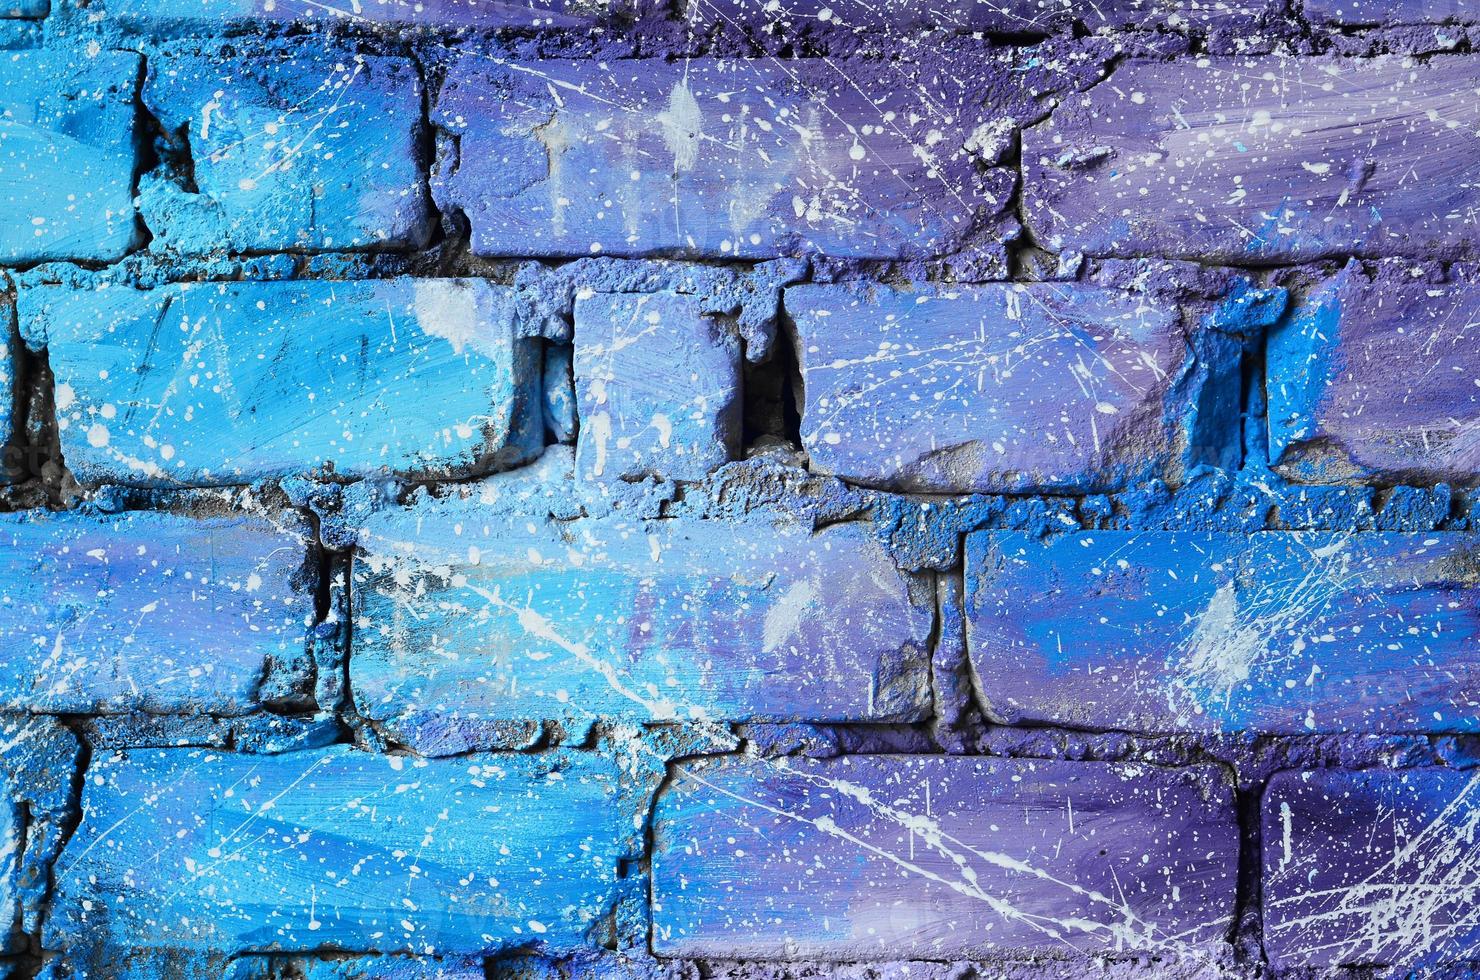 die Textur der alten Backsteinmauer, gemalt in blauen und violetten Farben mit achtlos verteilten weißen Tropfen und Spritzern, die die Sterne im Weltraum visualisieren foto